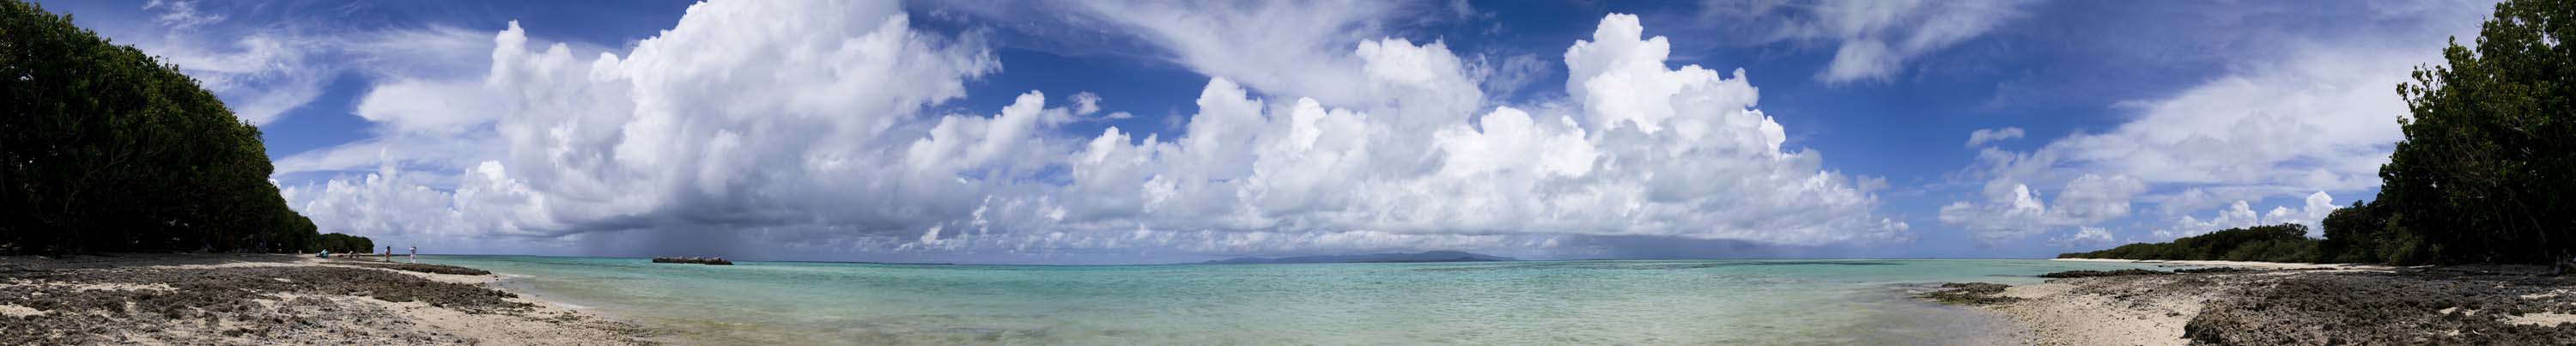 fotografia, materiale, libero il panorama, dipinga, fotografia di scorta,Spiaggia prospettiva intera di sabbia di una stella, panorama, nube, cielo blu, Verde di smeraldo